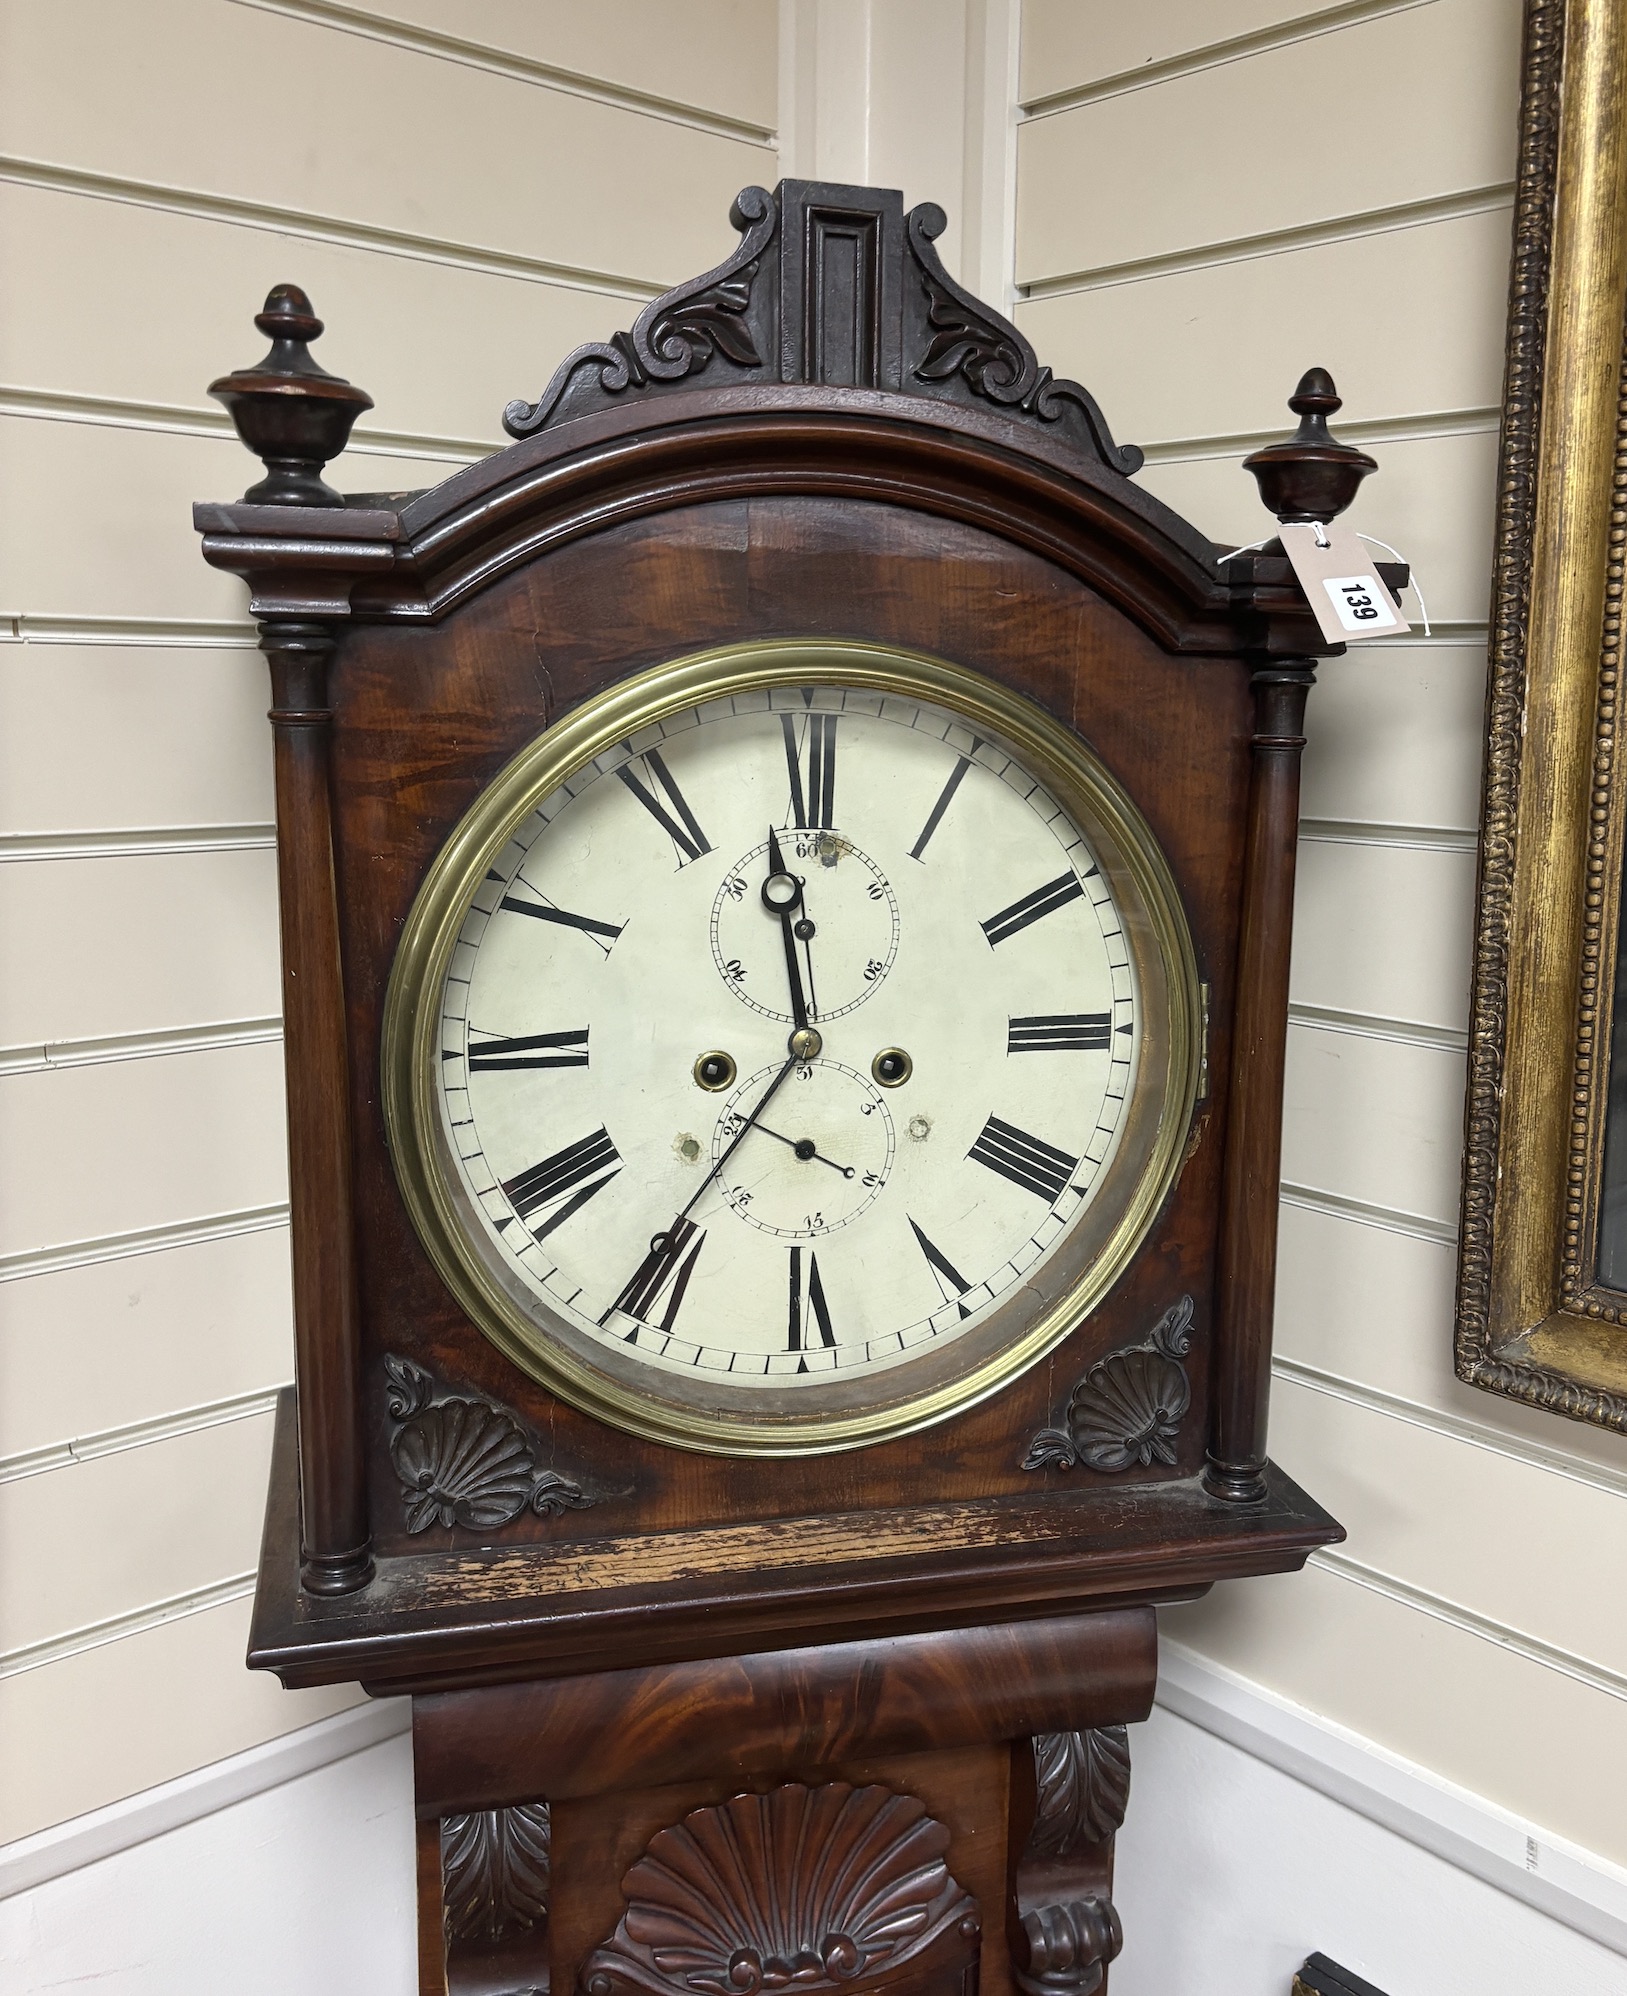 A William IV mahogany longcase clock, height 211cm